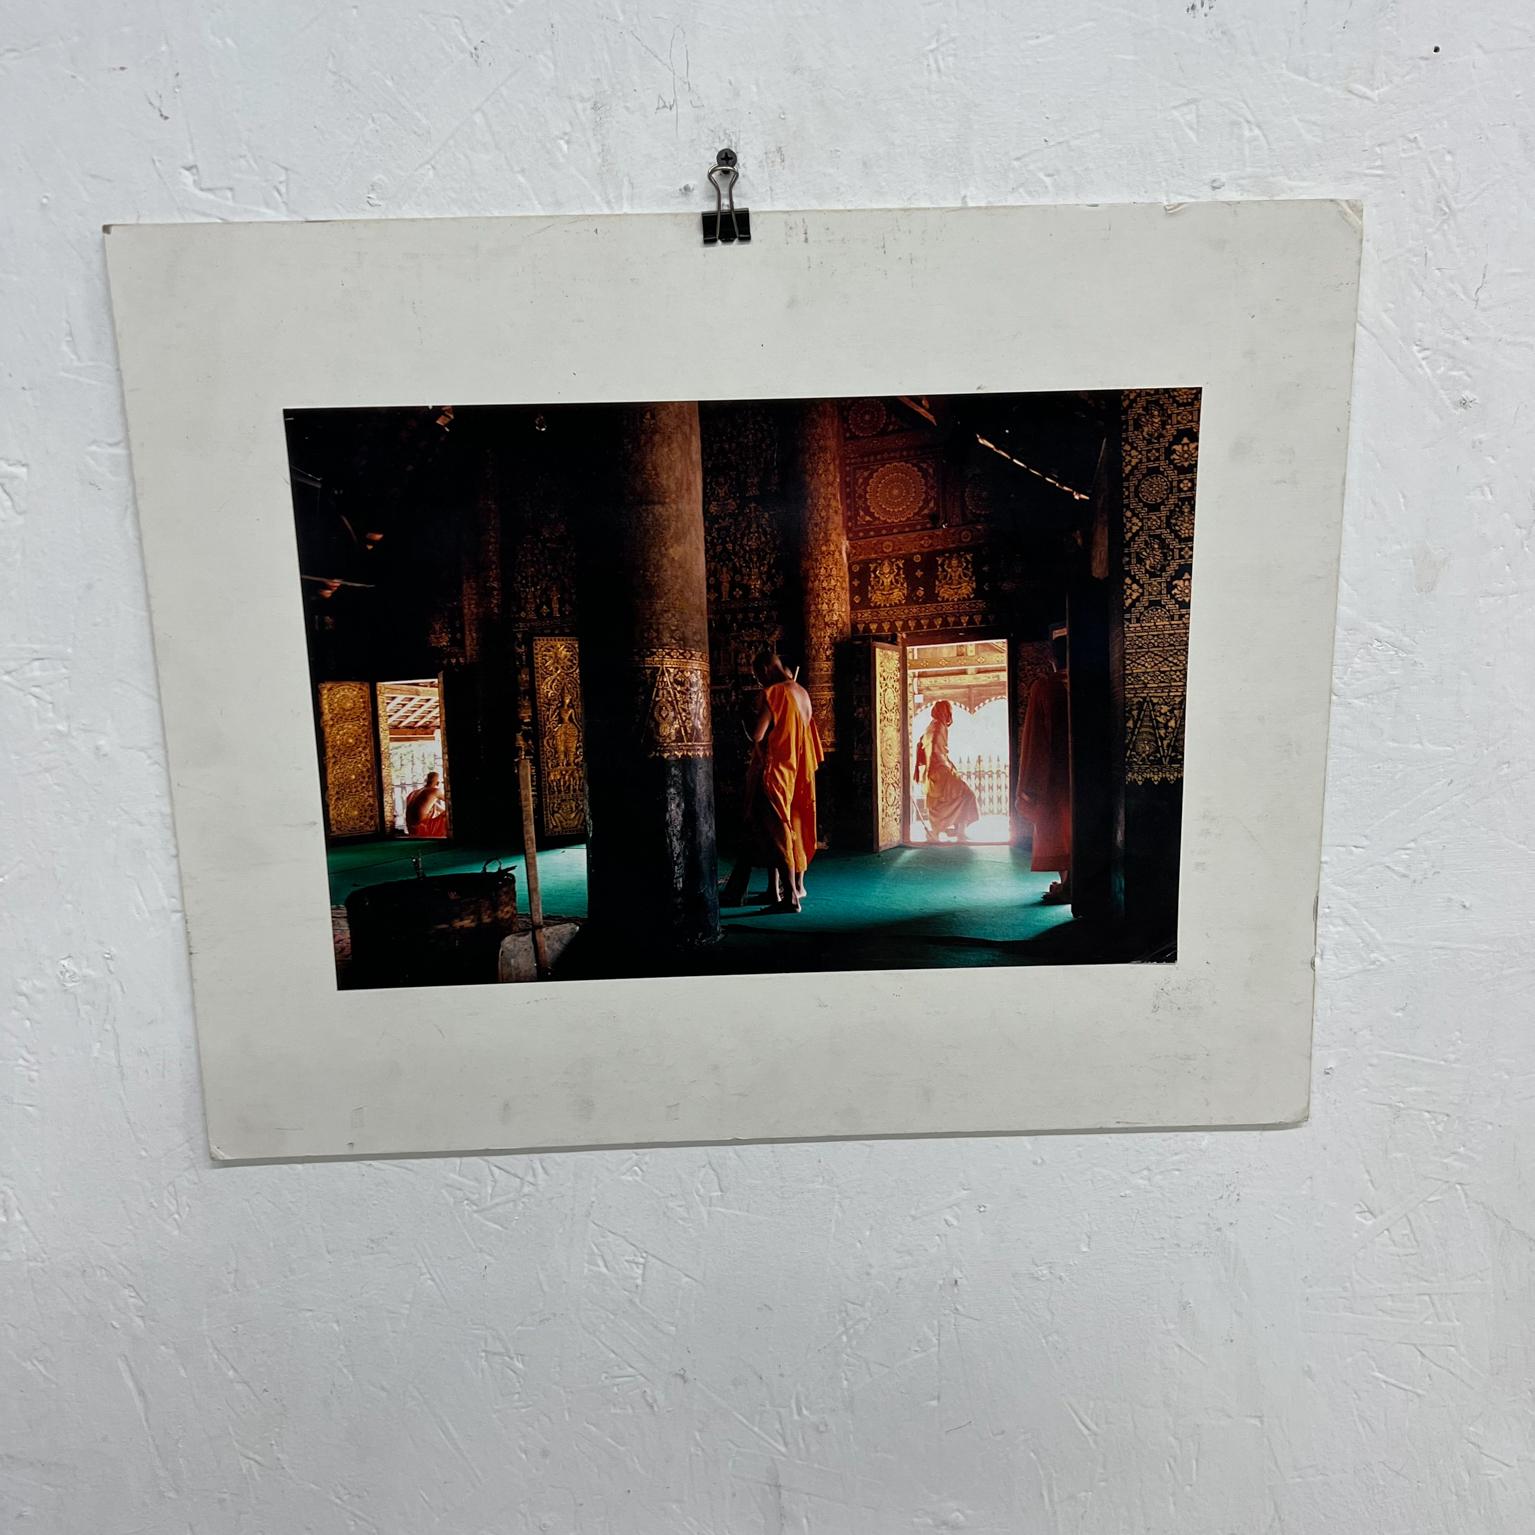 Photo couleur du temple du moine Krishna
20 x 16 art 15 x 10
État vintage original non restauré, le tapis est sale.
Voir les images .

